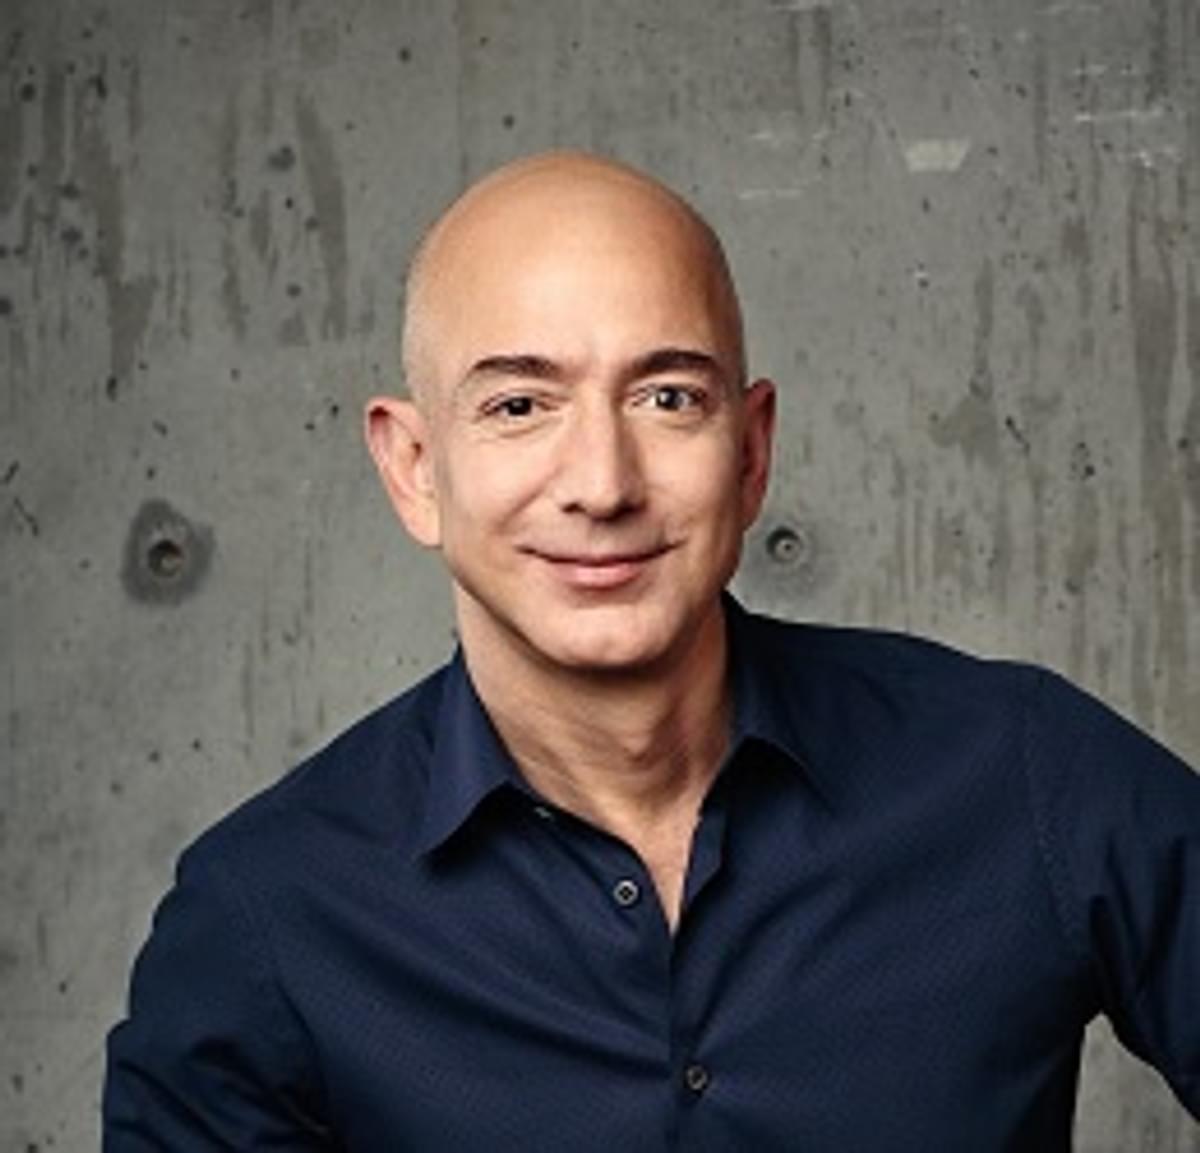 VN-rapporteur: Hack van smartphone Amazon-CEO Bezos hangt samen met moord op journalist Khashoggi image